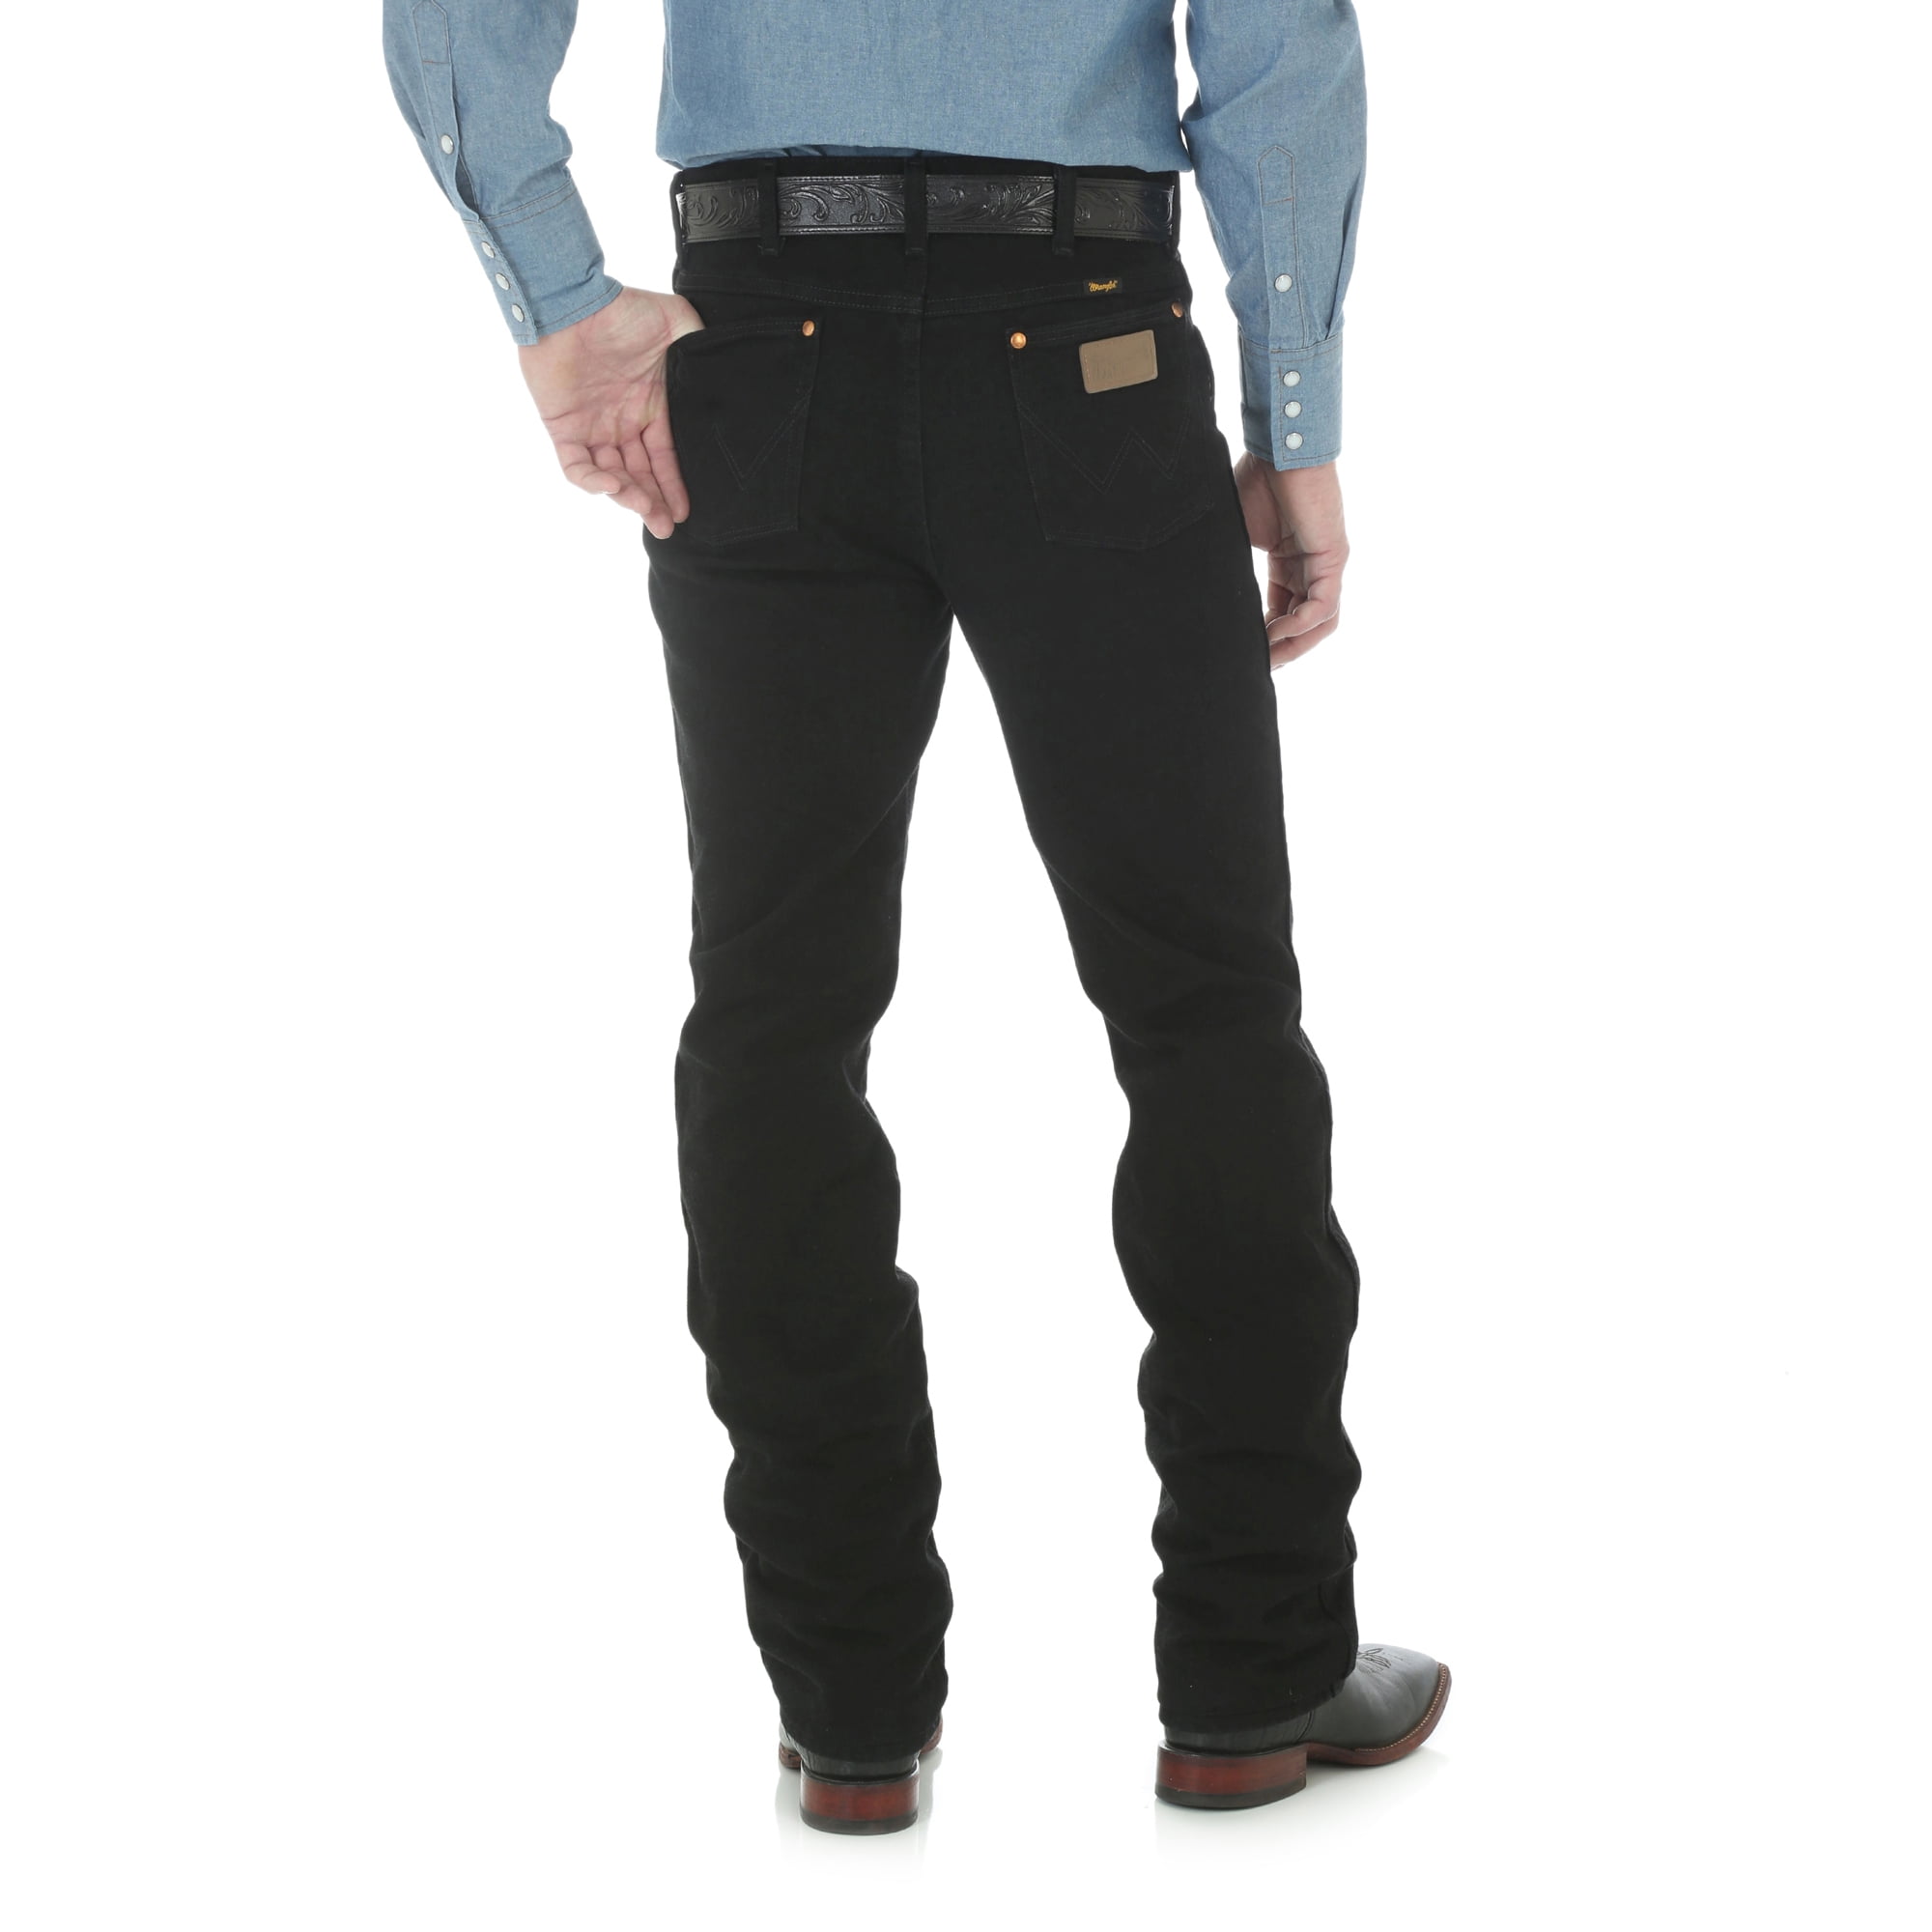 walmart black wrangler jeans